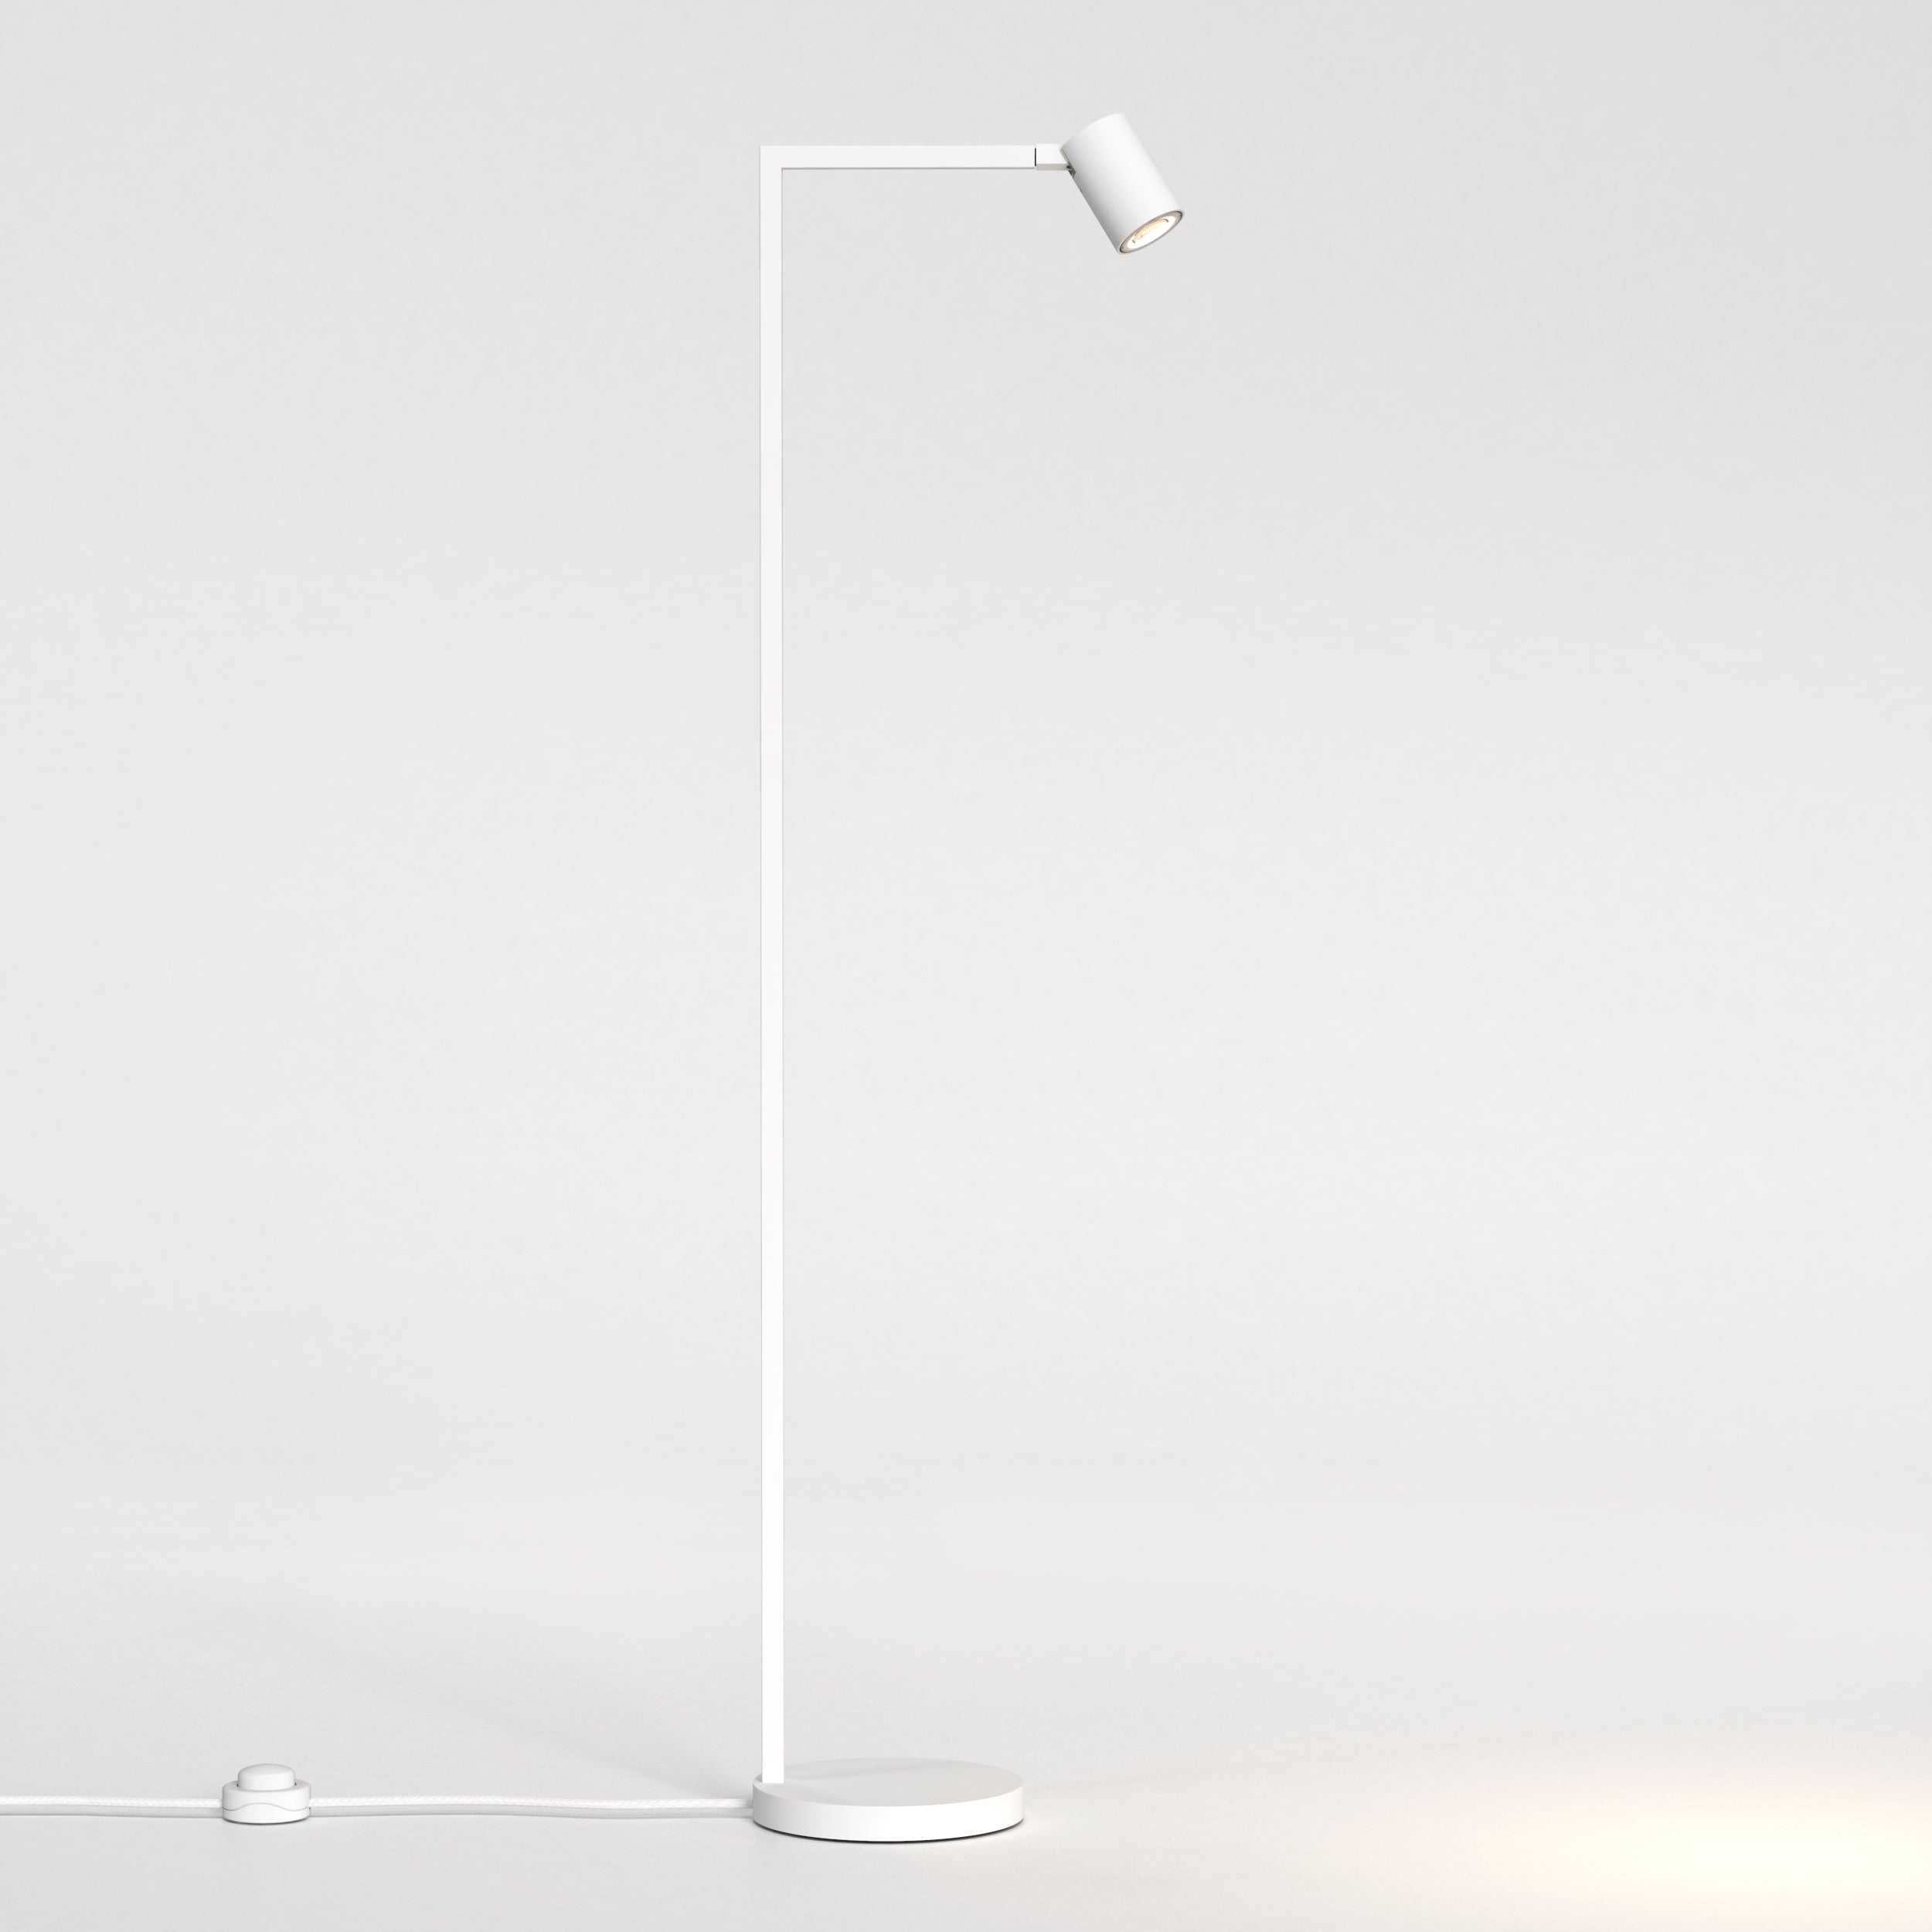 Hvid gulvlampe med justerbar hoved. Lampen har et enkelt design med firkantede linjer/vinkler.